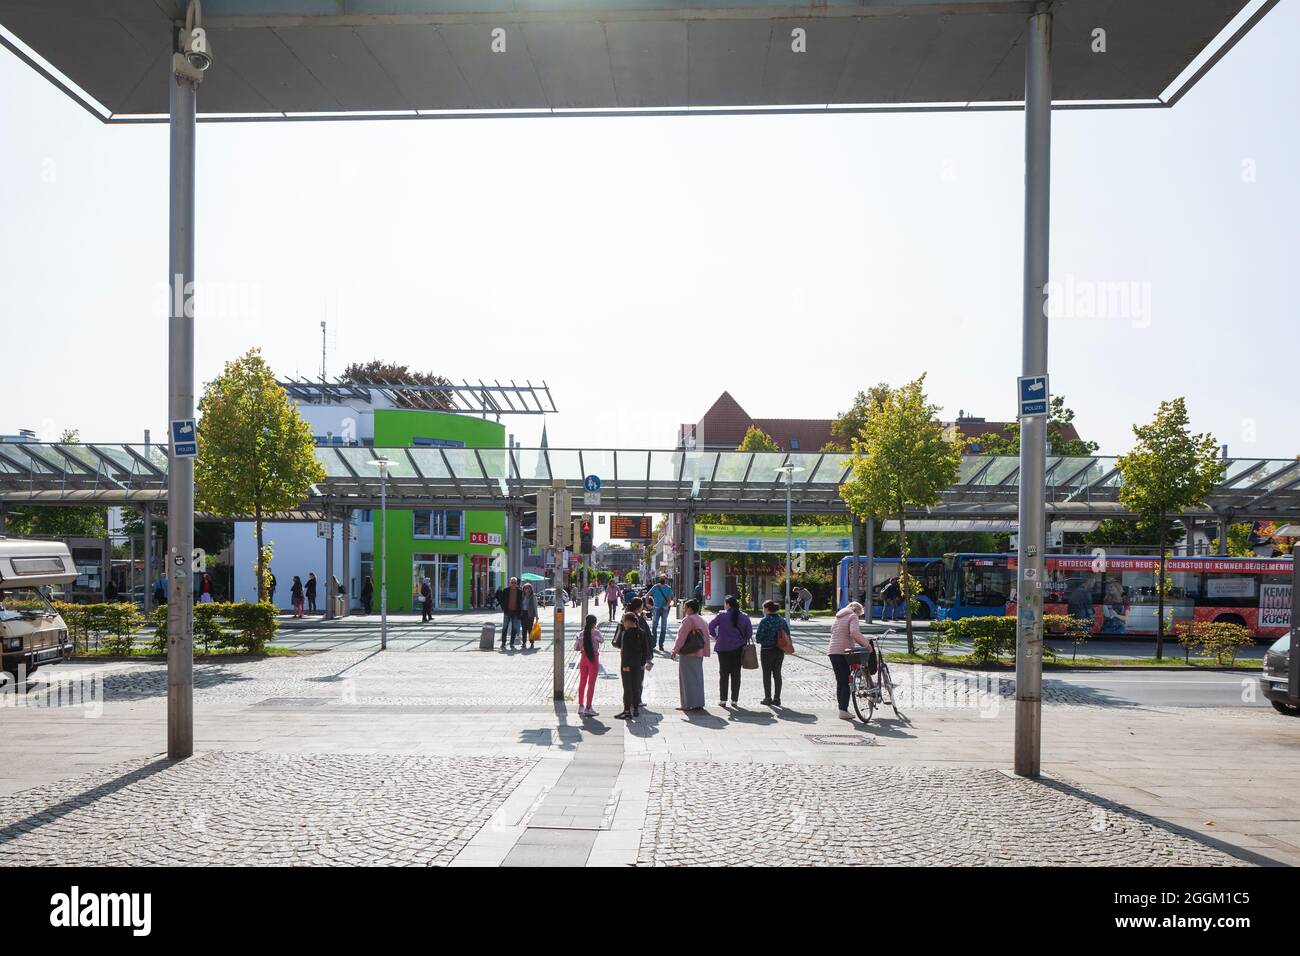 Gare routière, rue commerçante Bahnhofstrasse, Delmenhorst, Basse-Saxe, Allemagne, Europe Banque D'Images